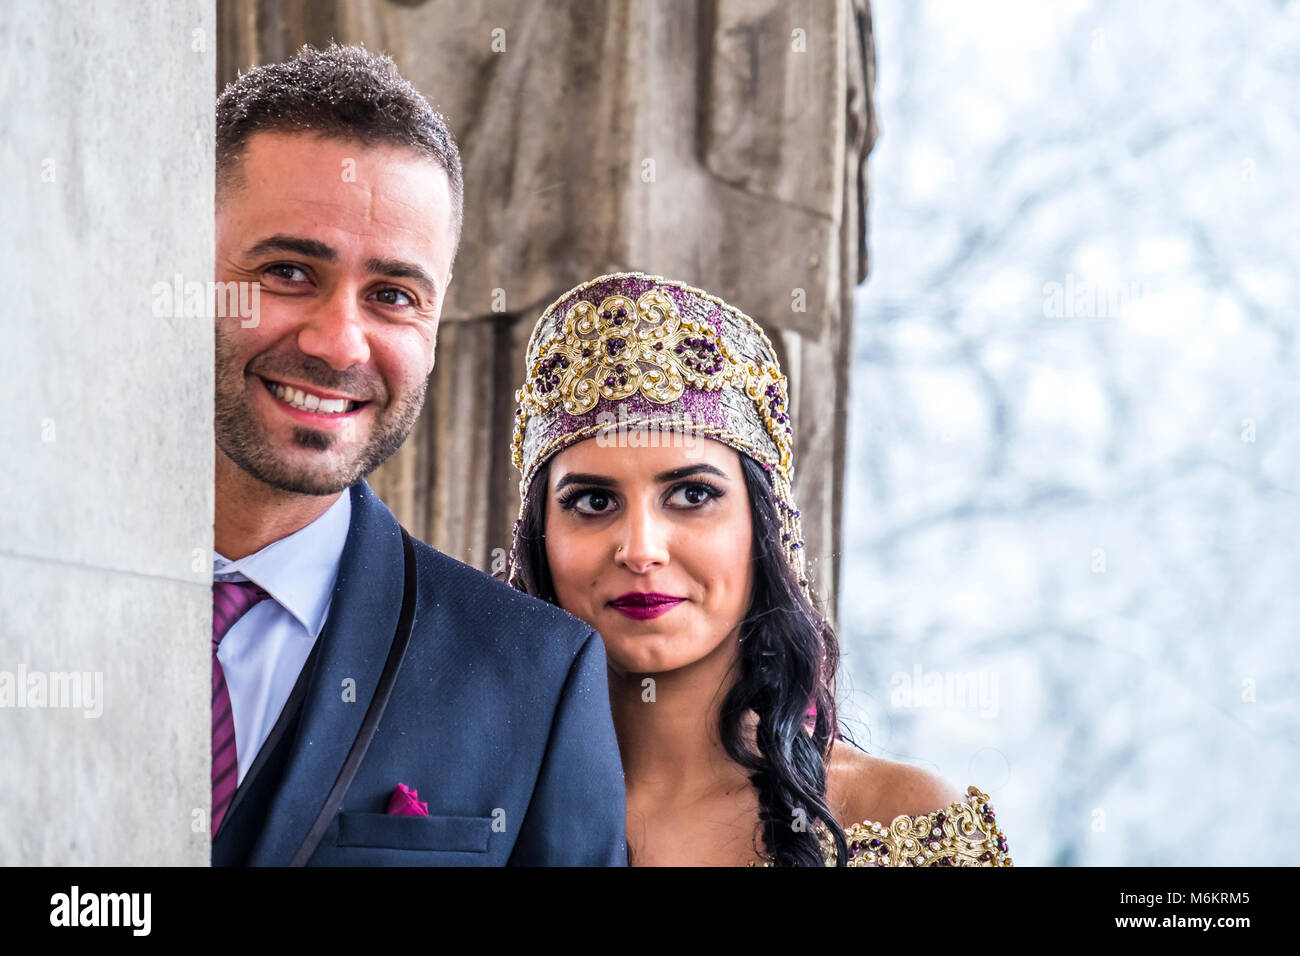 Couple heureux en robe de mariage traditionnelle turque au cours de leur mariage dans une tempête de neige Banque D'Images